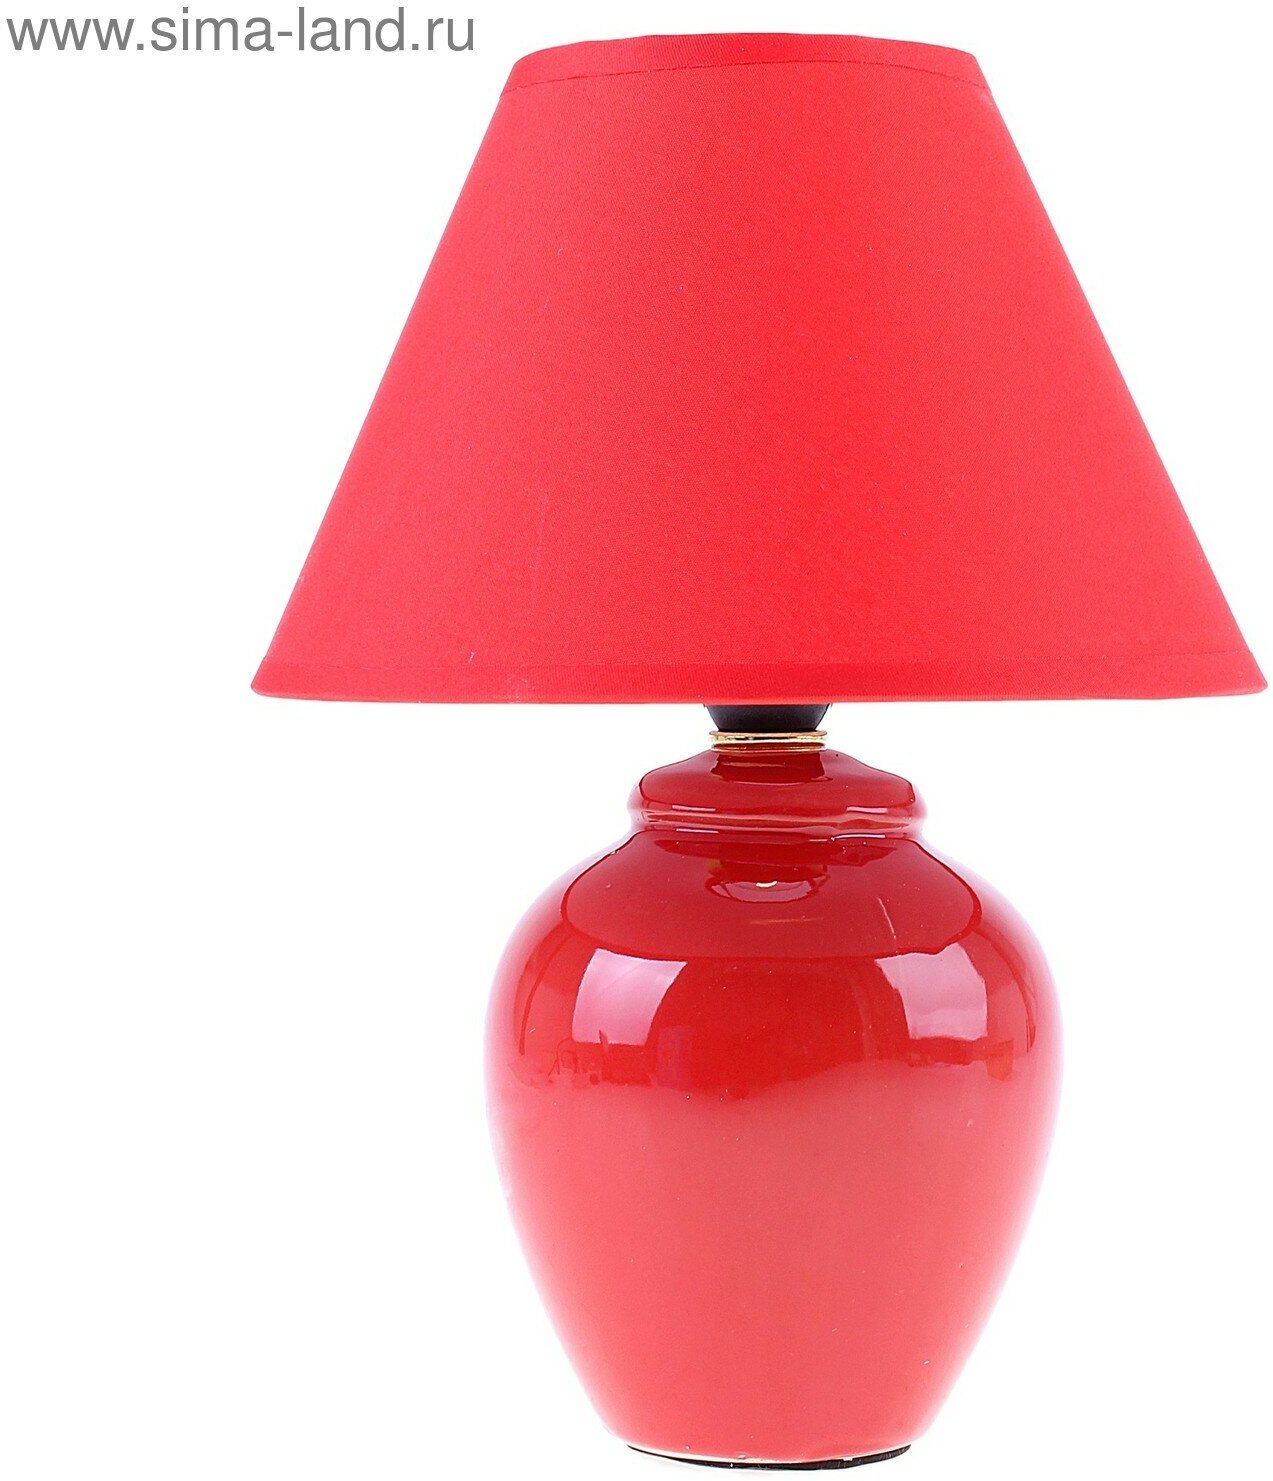 Лампа настольная "Азалия", 220V, красная